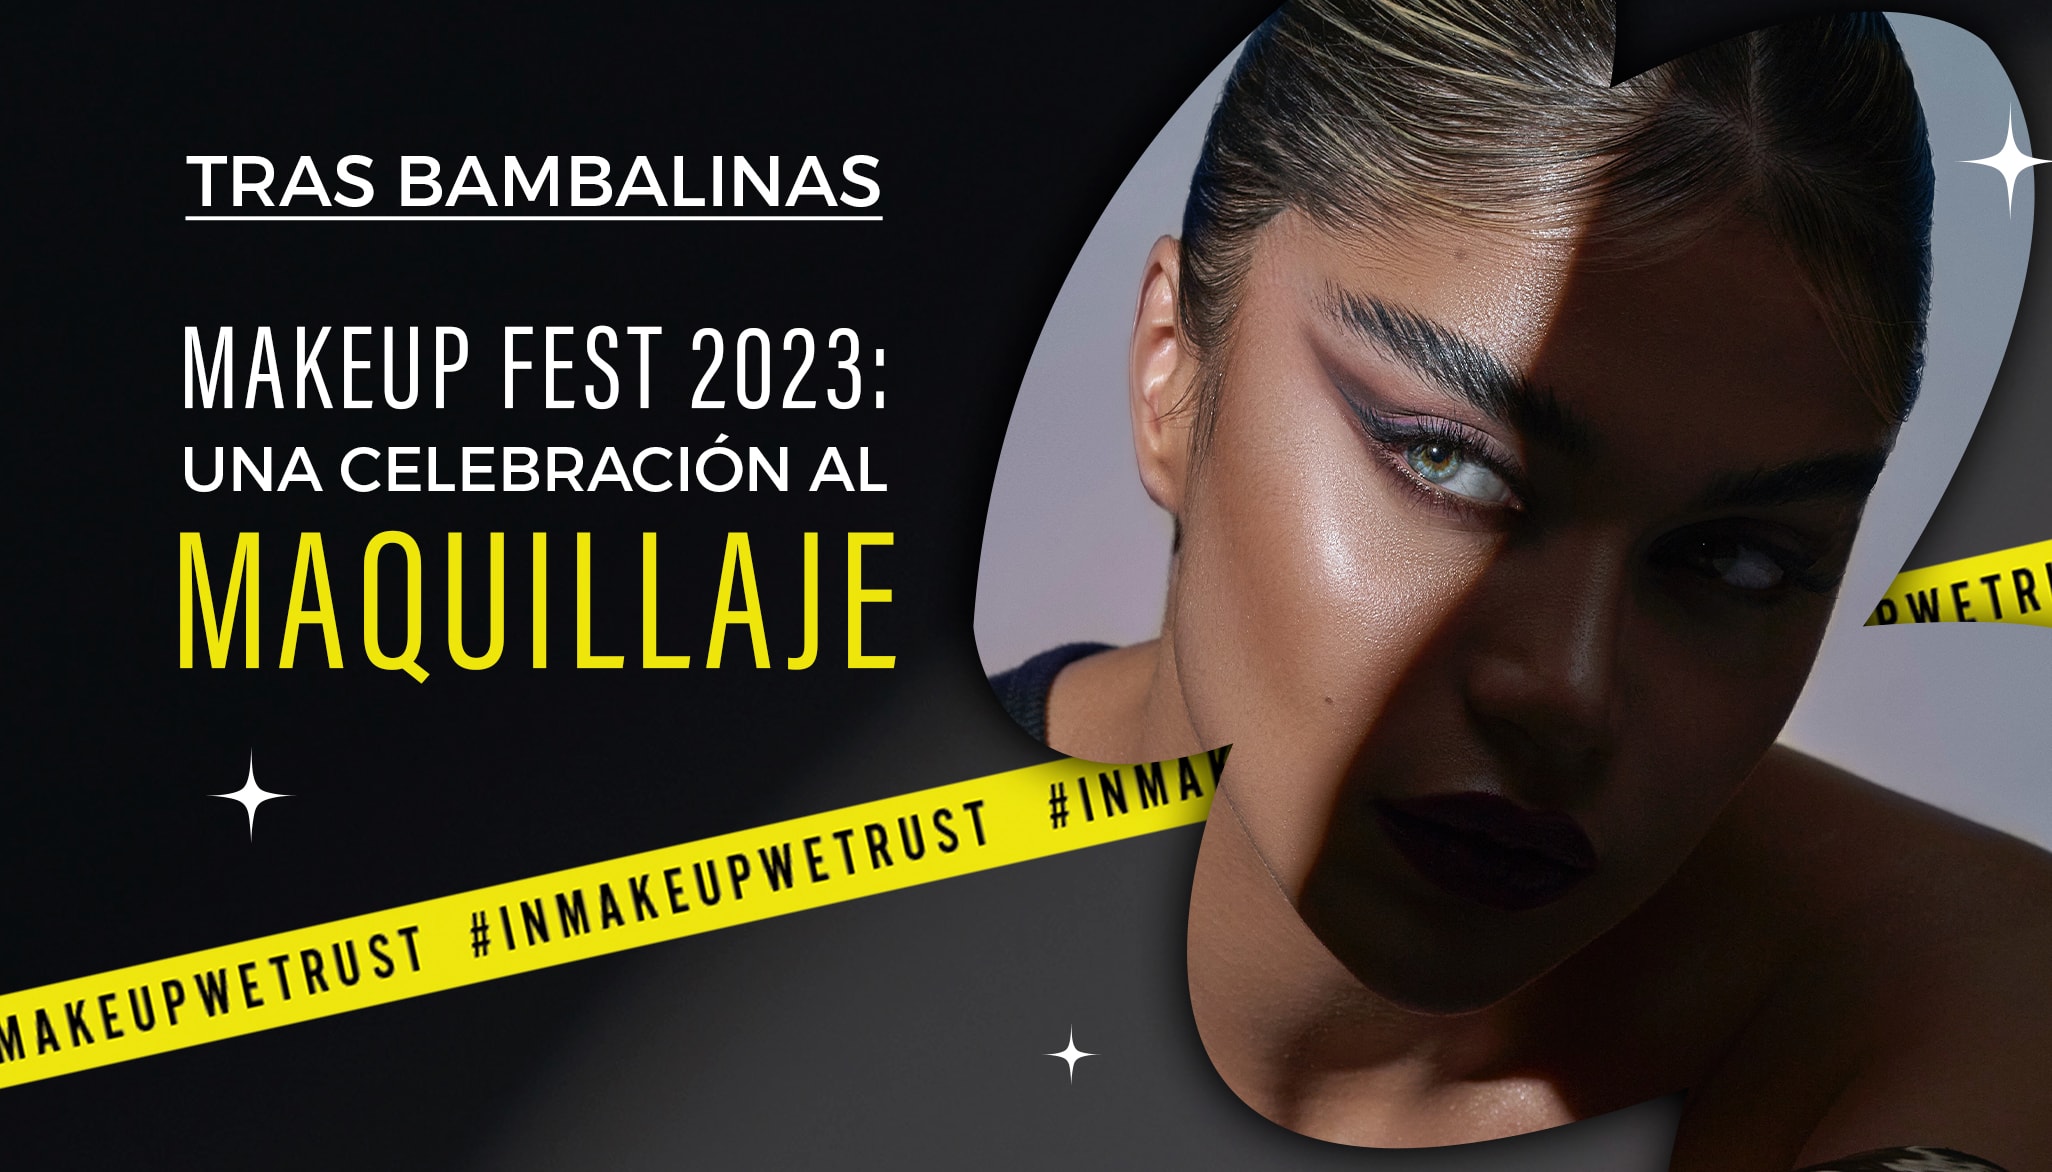 Tras Bambalinas: Makeup Fest 2023, una celebración al Maquillaje